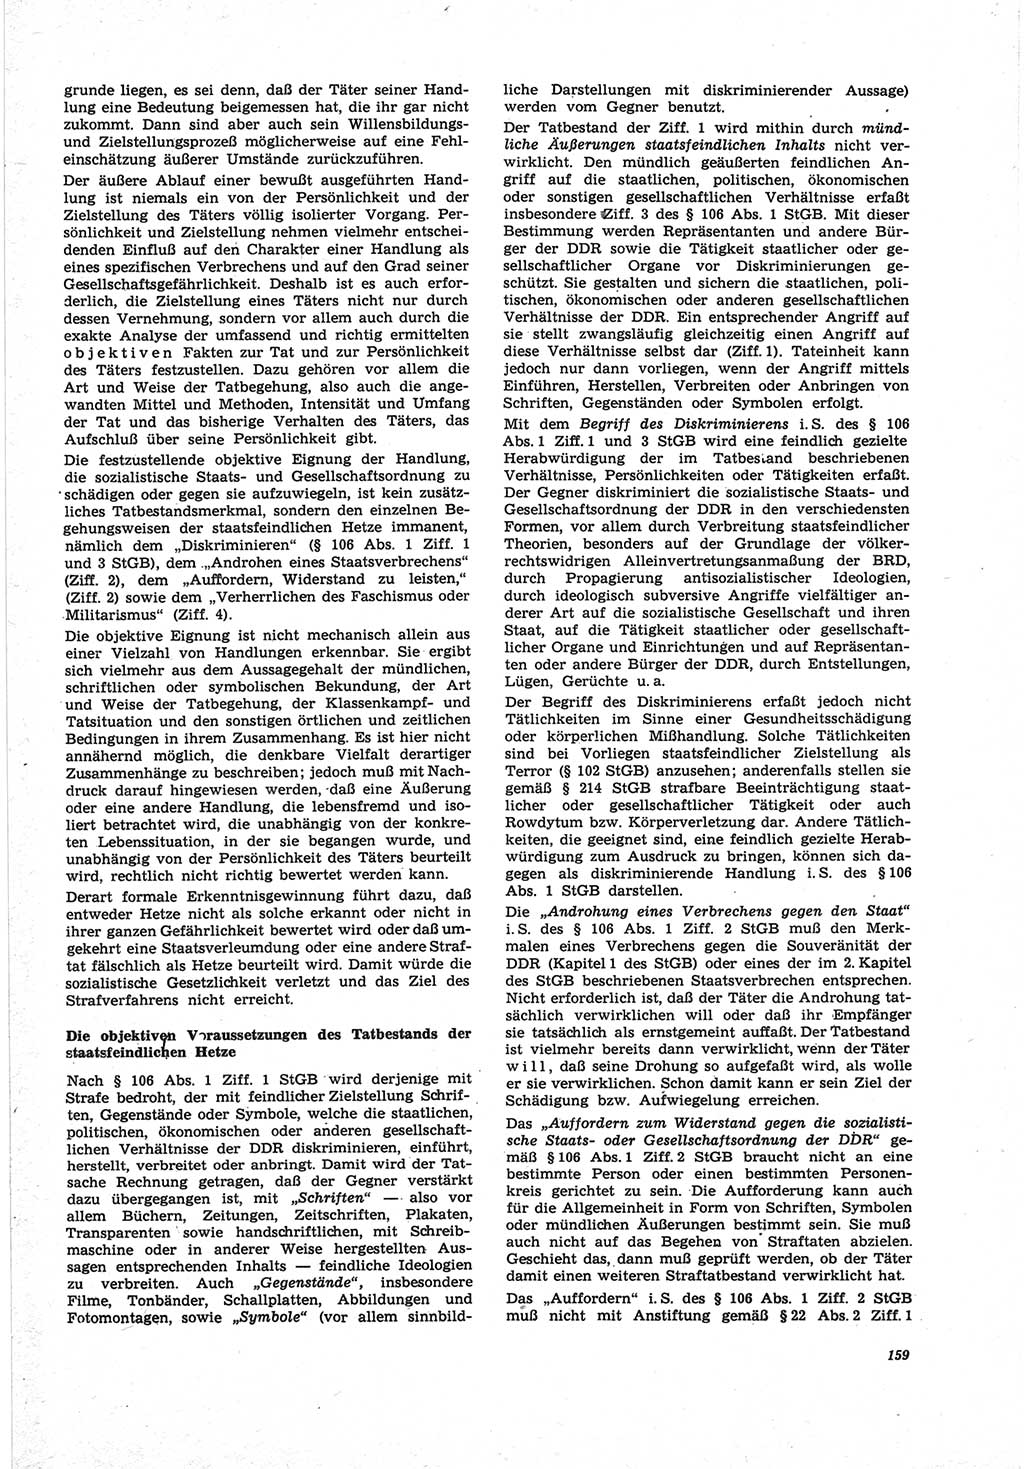 Neue Justiz (NJ), Zeitschrift für Recht und Rechtswissenschaft [Deutsche Demokratische Republik (DDR)], 25. Jahrgang 1971, Seite 159 (NJ DDR 1971, S. 159)